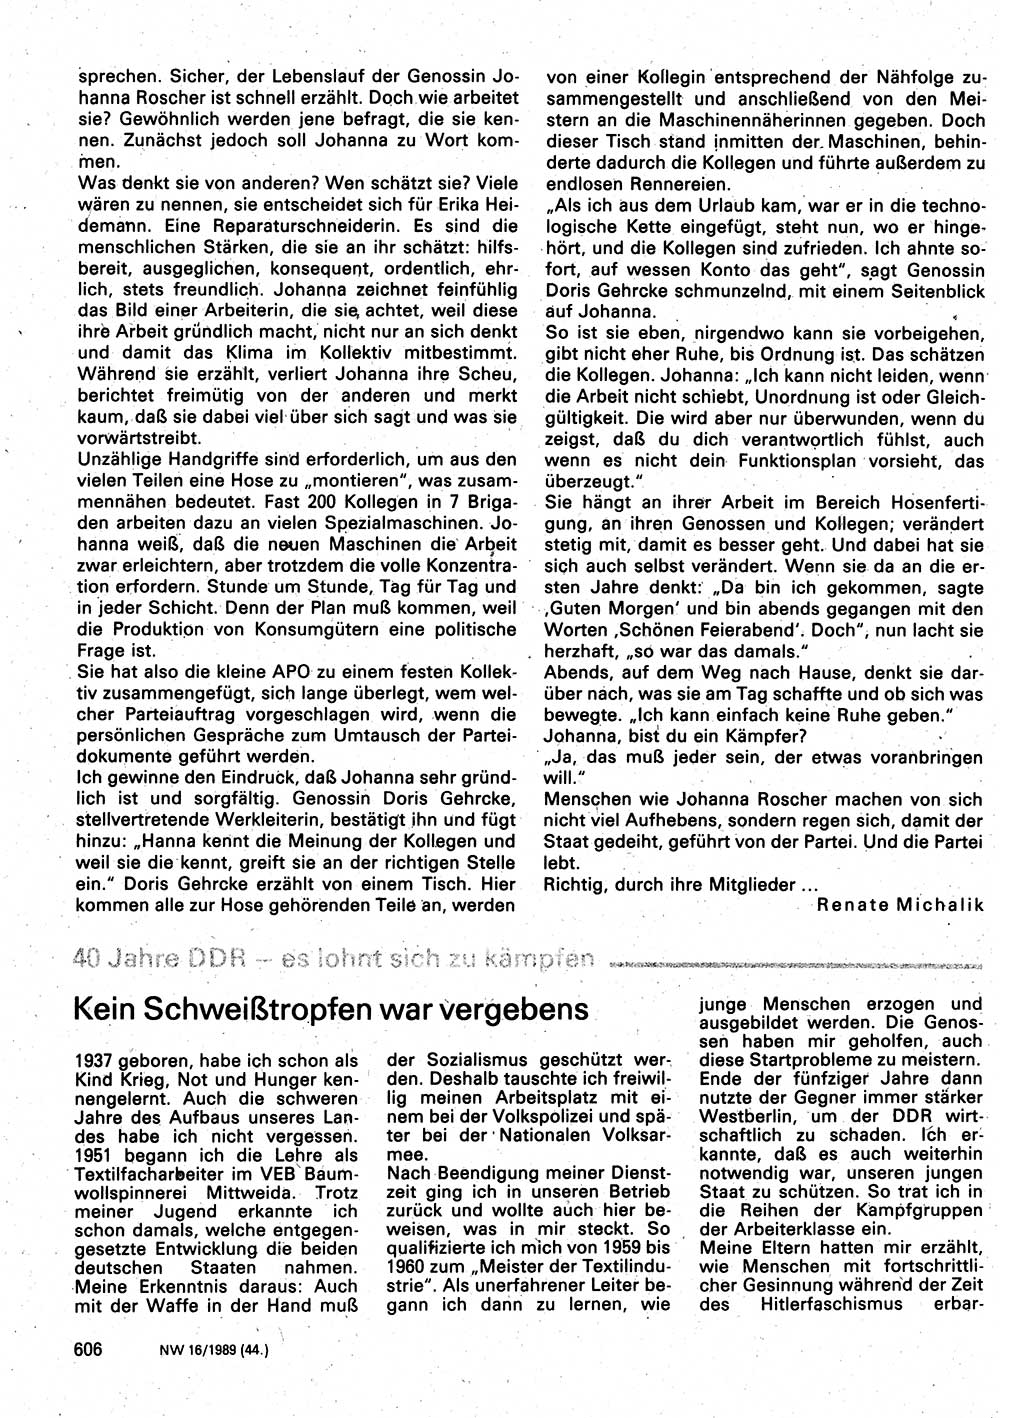 Neuer Weg (NW), Organ des Zentralkomitees (ZK) der SED (Sozialistische Einheitspartei Deutschlands) für Fragen des Parteilebens, 44. Jahrgang [Deutsche Demokratische Republik (DDR)] 1989, Seite 606 (NW ZK SED DDR 1989, S. 606)